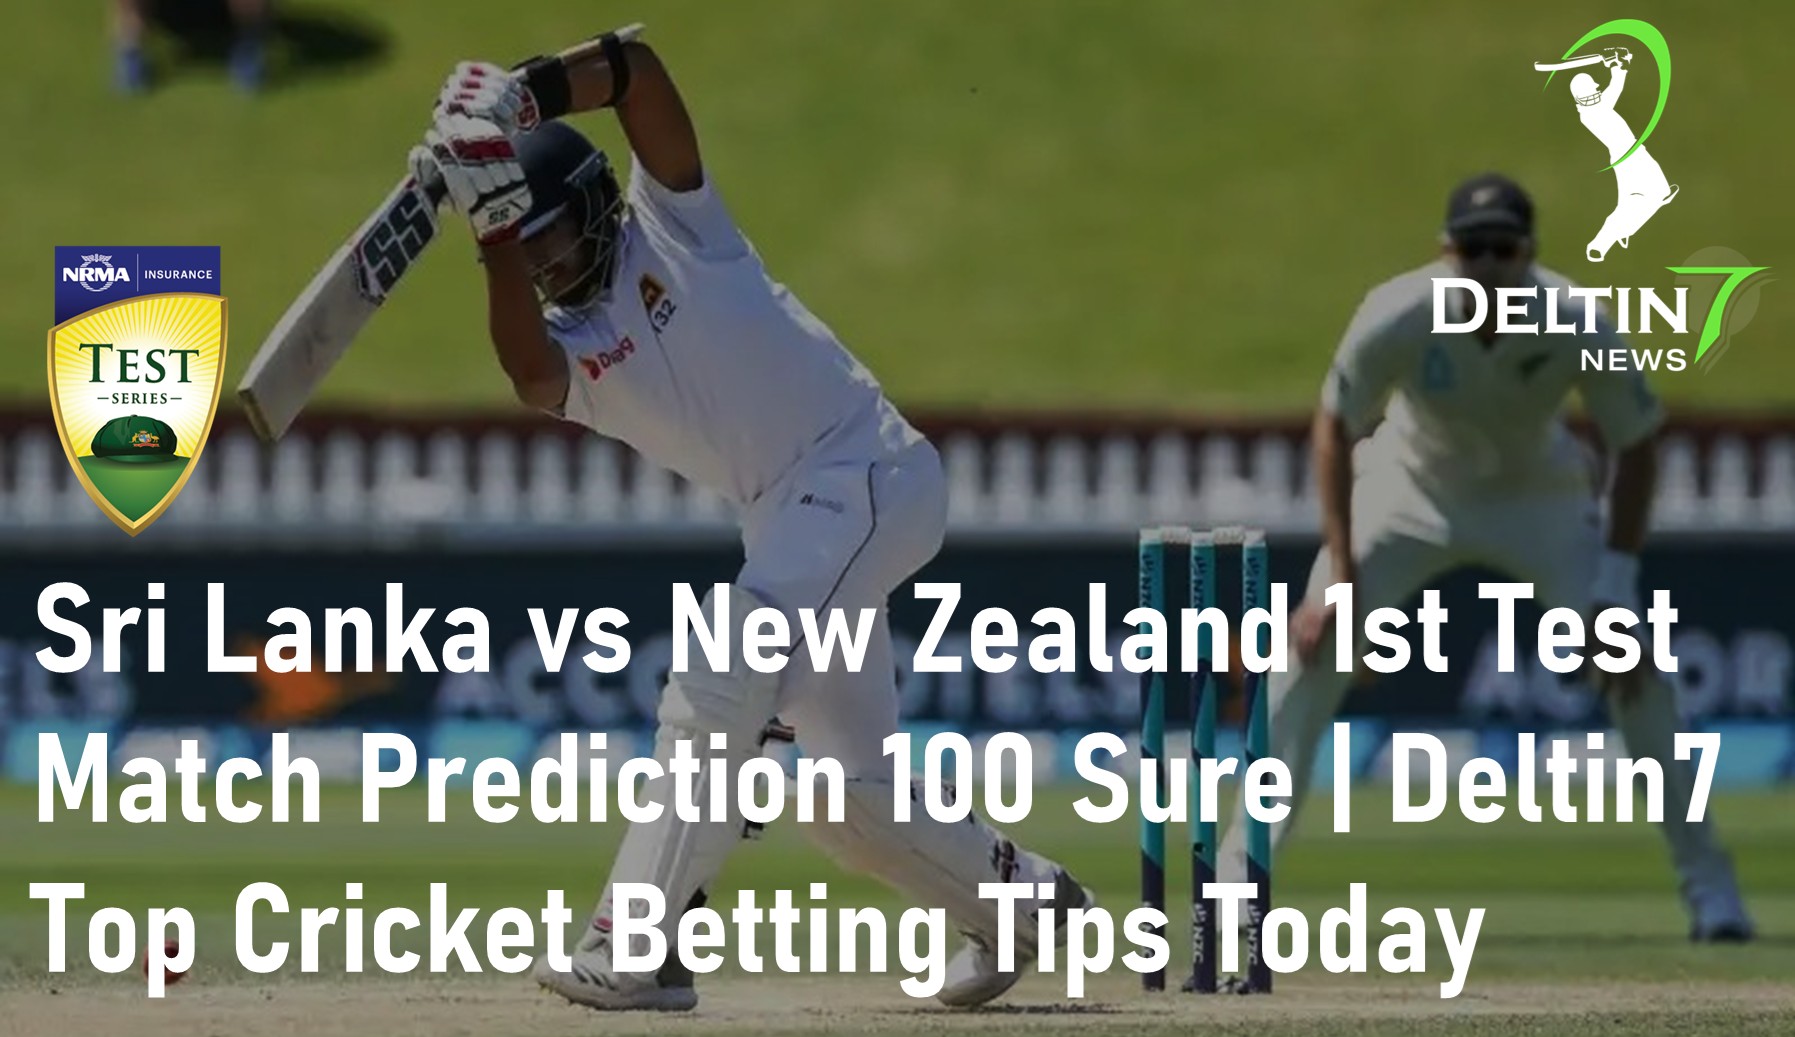 Sri Lanka Vs New Zealand 1st Test Match Prediction 100 Sure